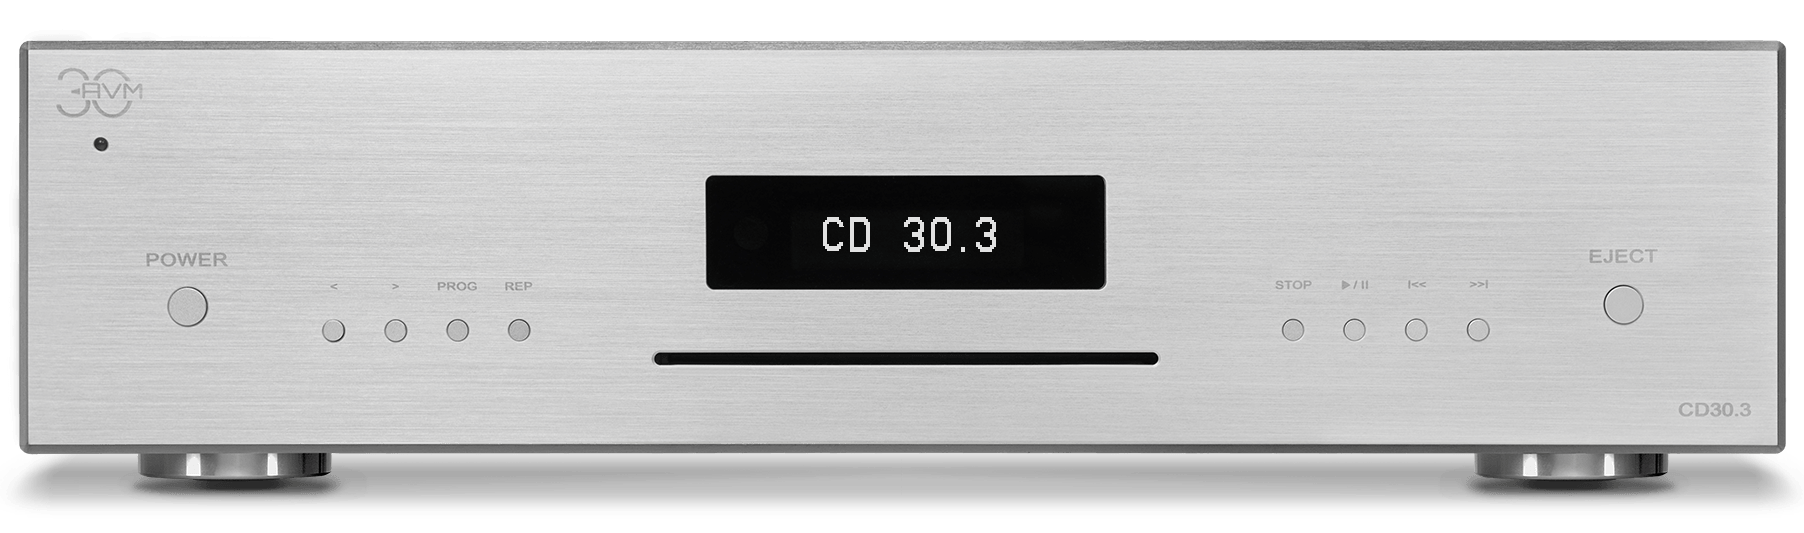 AVM CD 30.3 Digital to Analog Converter